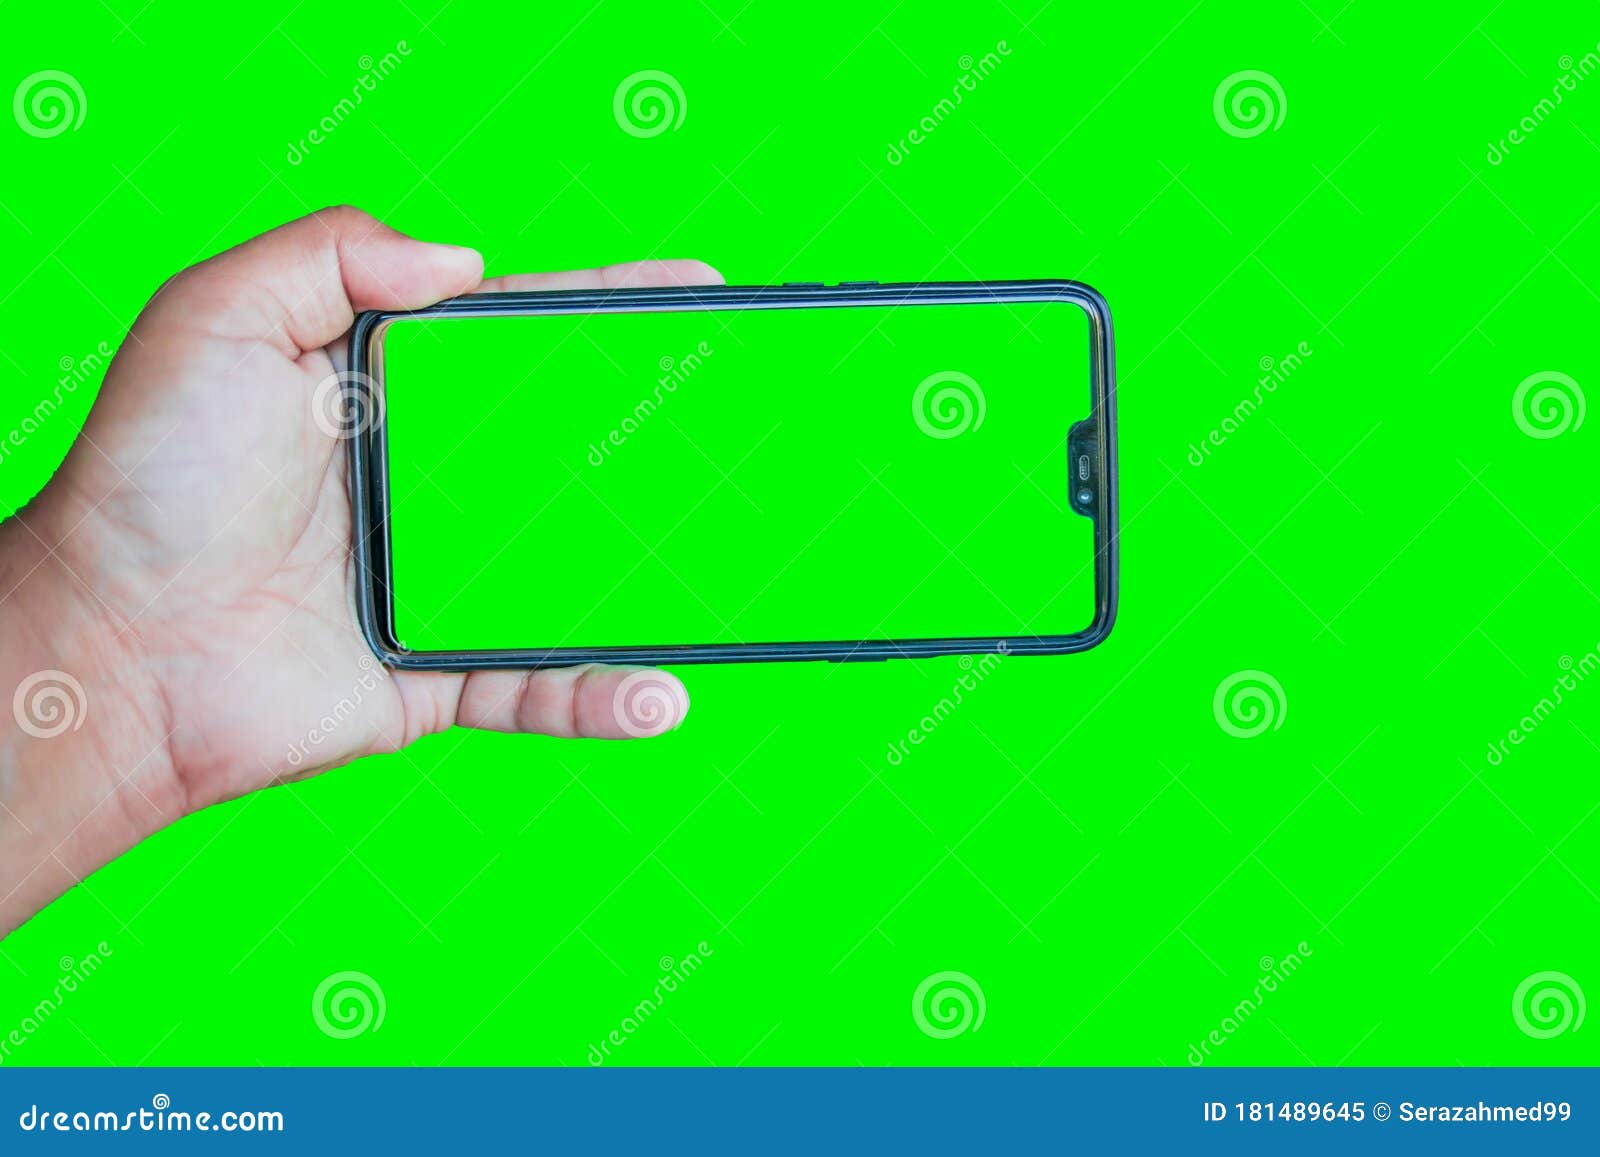 Nam giới trẻ cầm điện thoại trên nền chroma key xanh lá cây giúp cho hình ảnh trở nên sống động và nổi bật hơn.